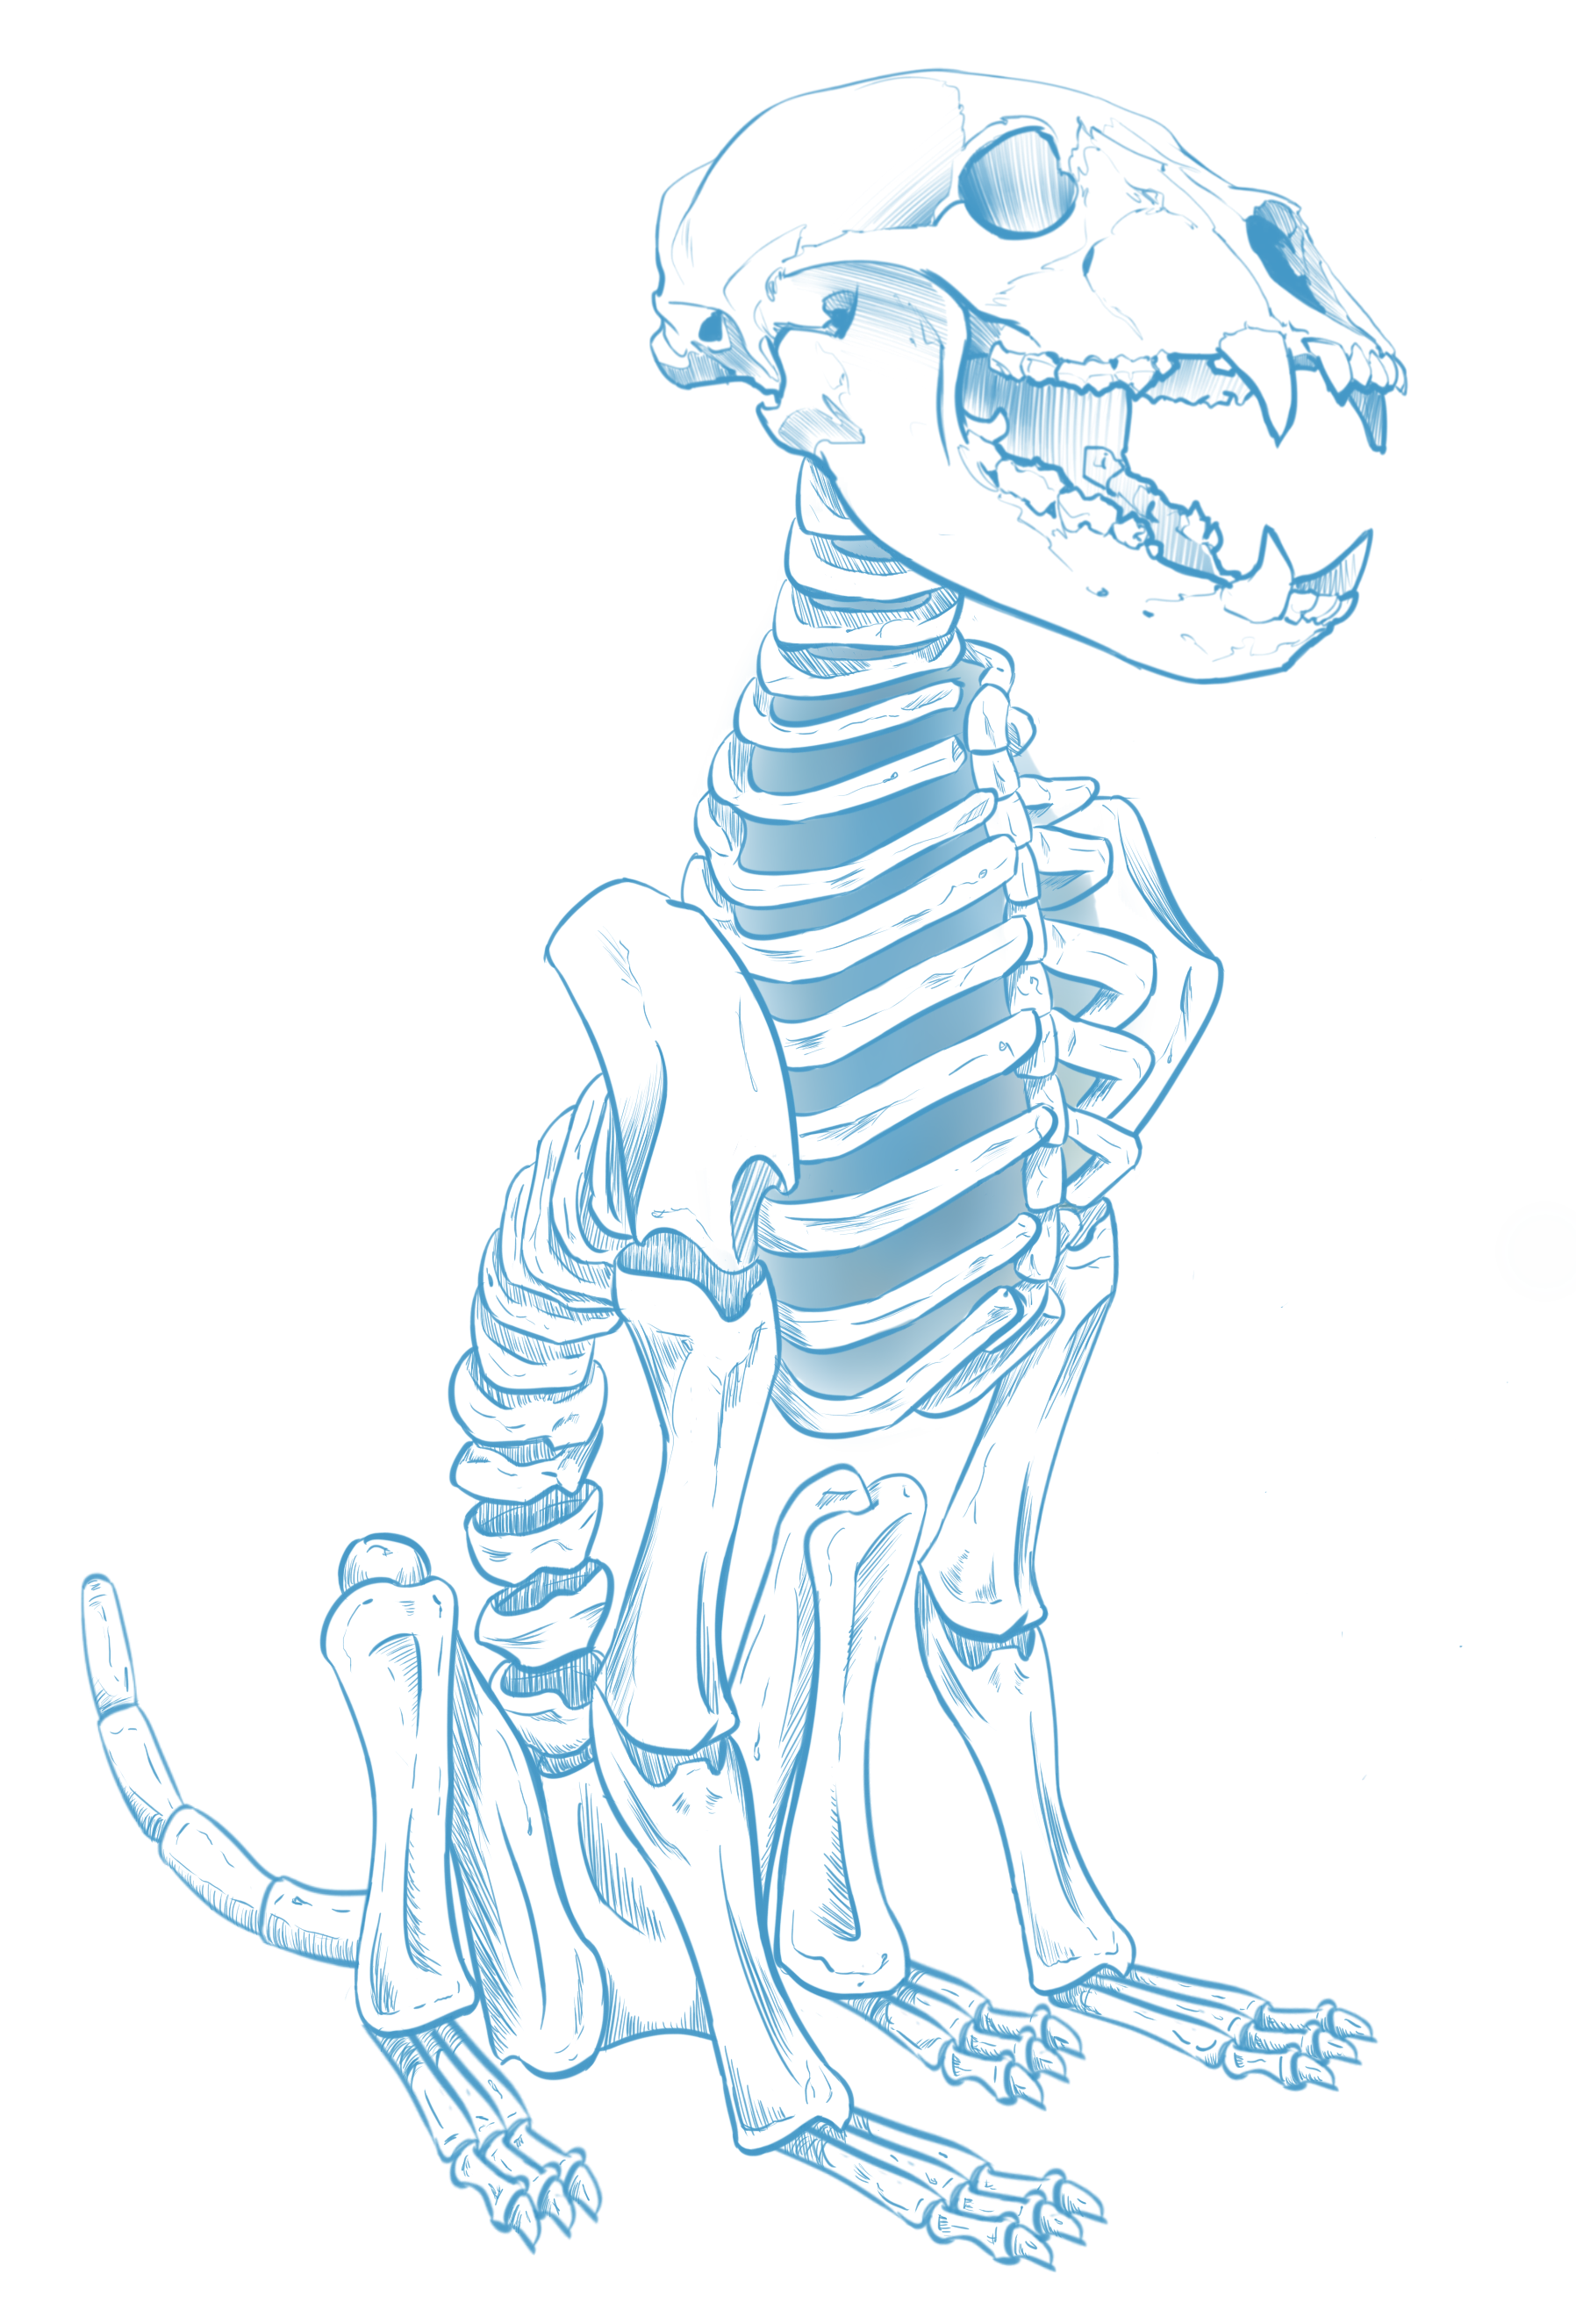 Dog Skeleton Drawing at GetDrawings Free download